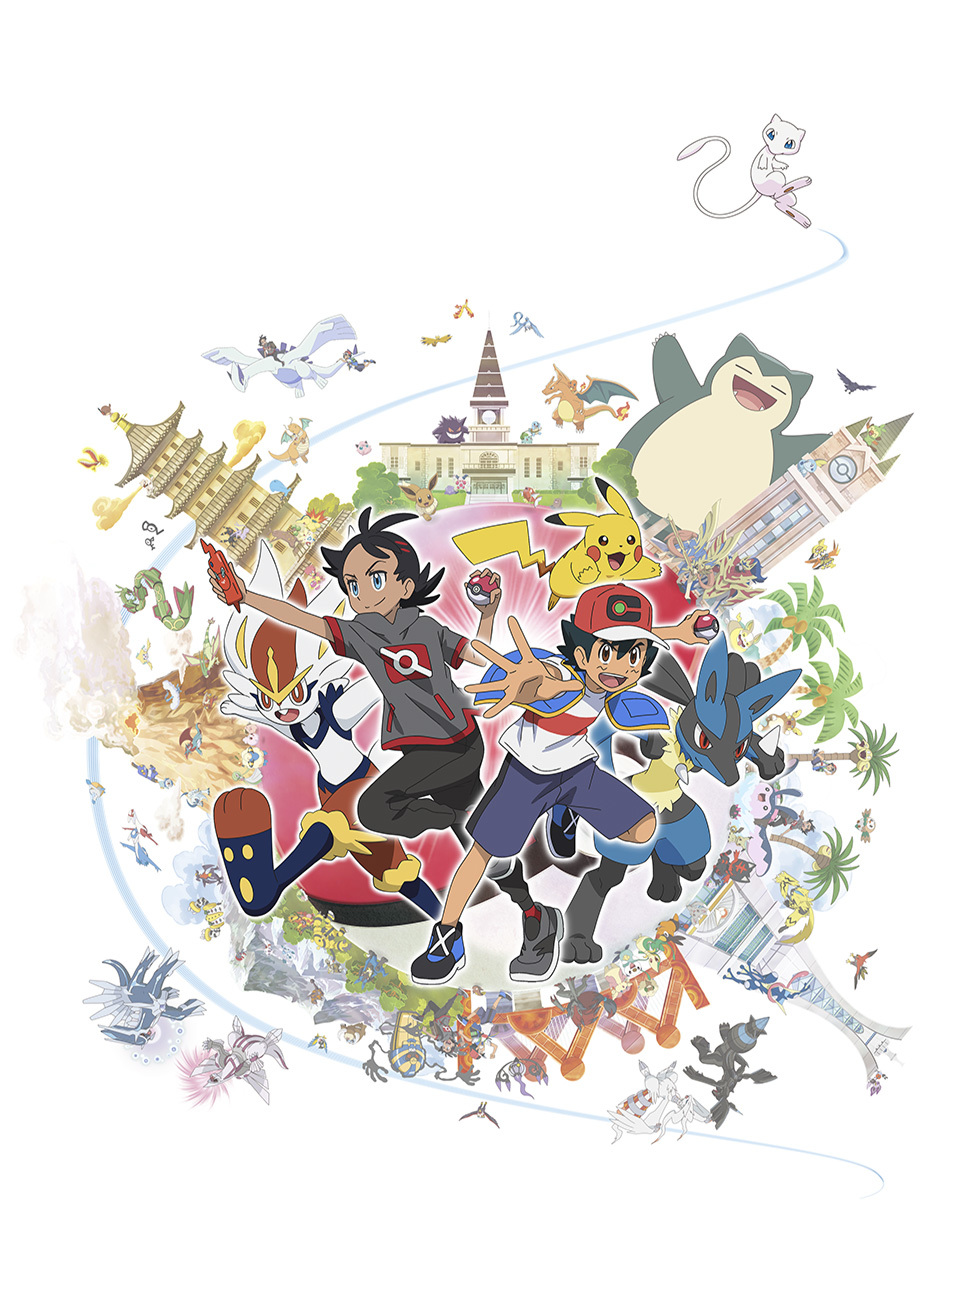 アニメ『ポケットモンスター』 （C）Nintendo･Creatures･GAME FREAK･TV Tokyo･ShoPro･JR Kikaku （C）Pokémon